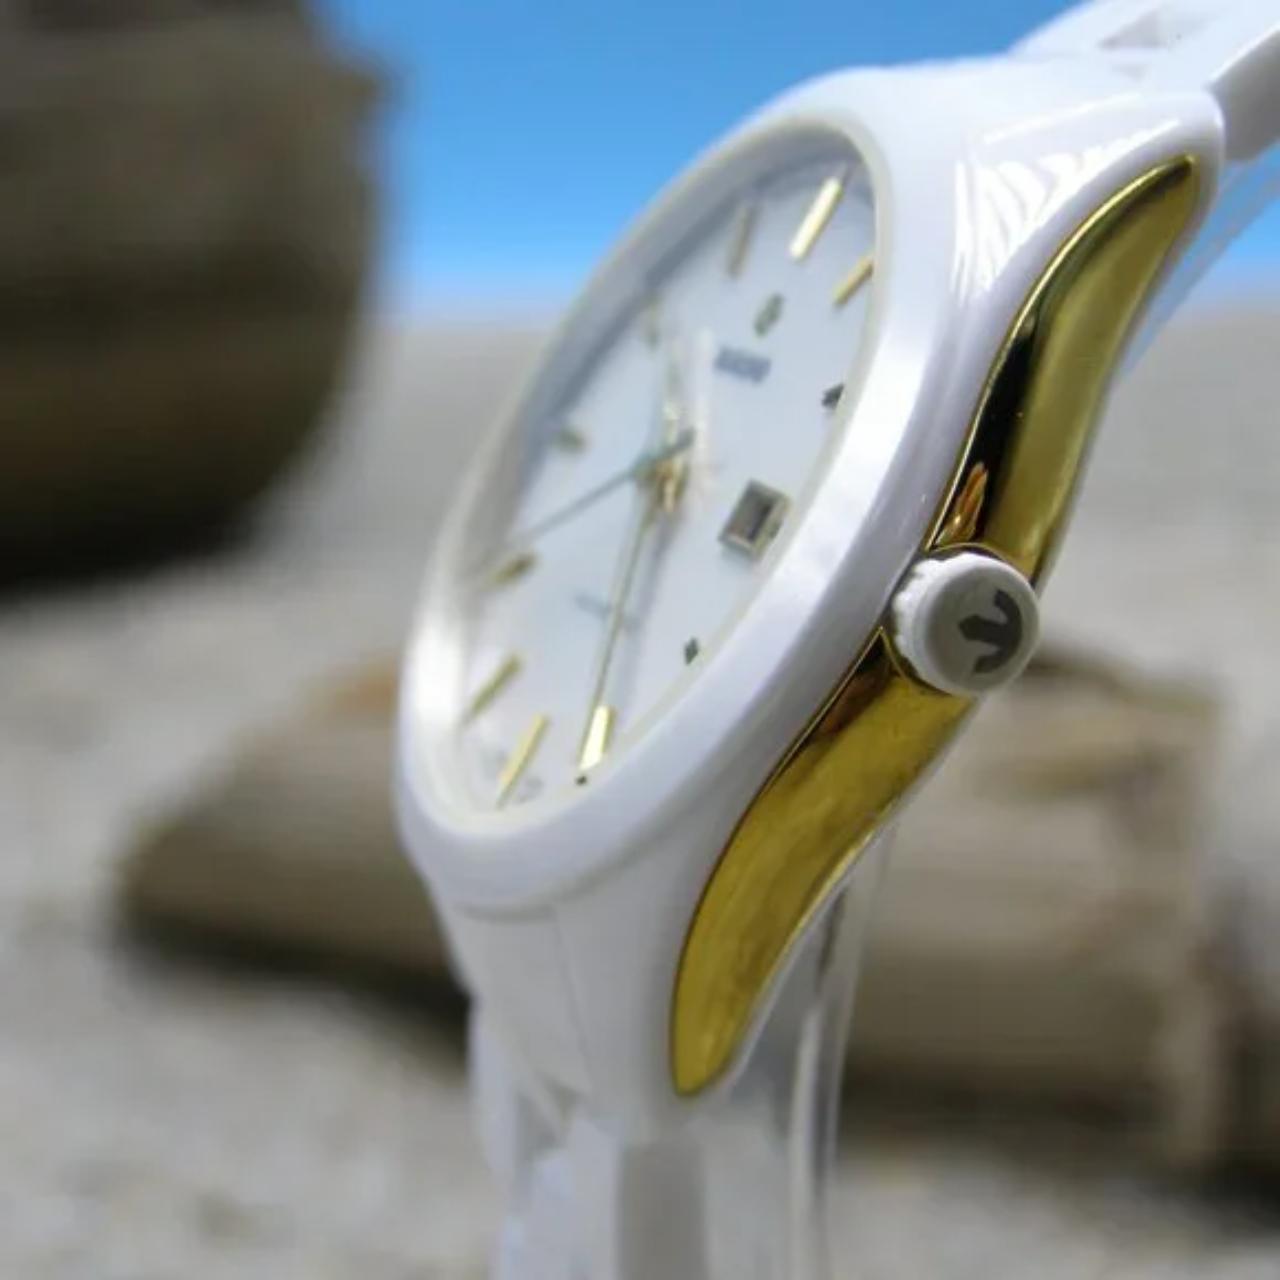 Product Image 3 - Rado Hyperchrome White Women's Watch

White